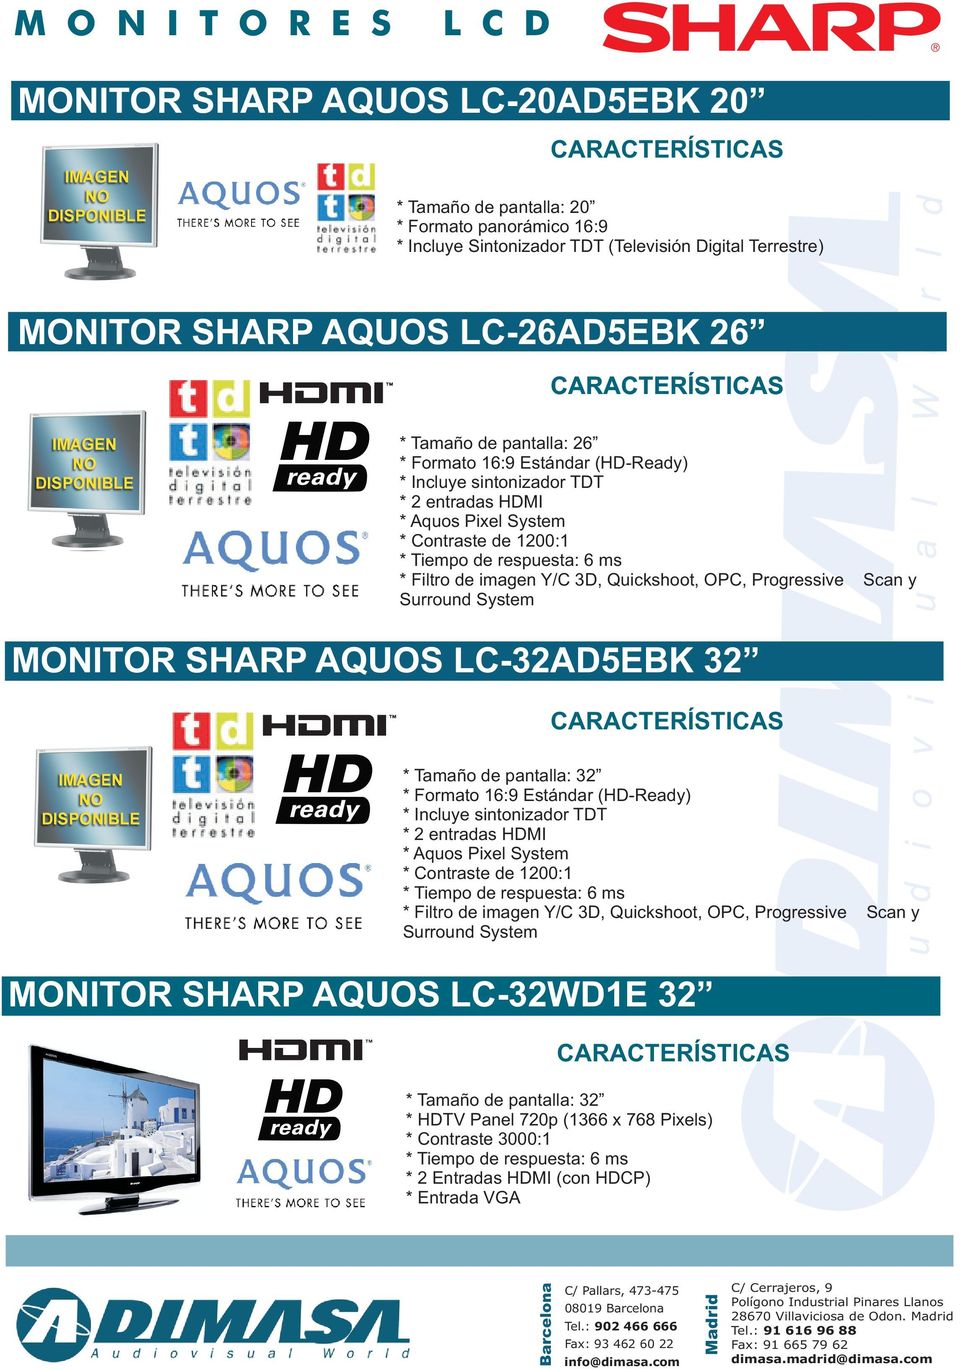 LC-32AD5EBK 32 * Tamaño de pantalla: 32 * 2 entradas HDMI * Contraste de 1200:1 * Filtro de imagen Y/C 3D, Quickshoot, OPC, Progressive Scan y Surround